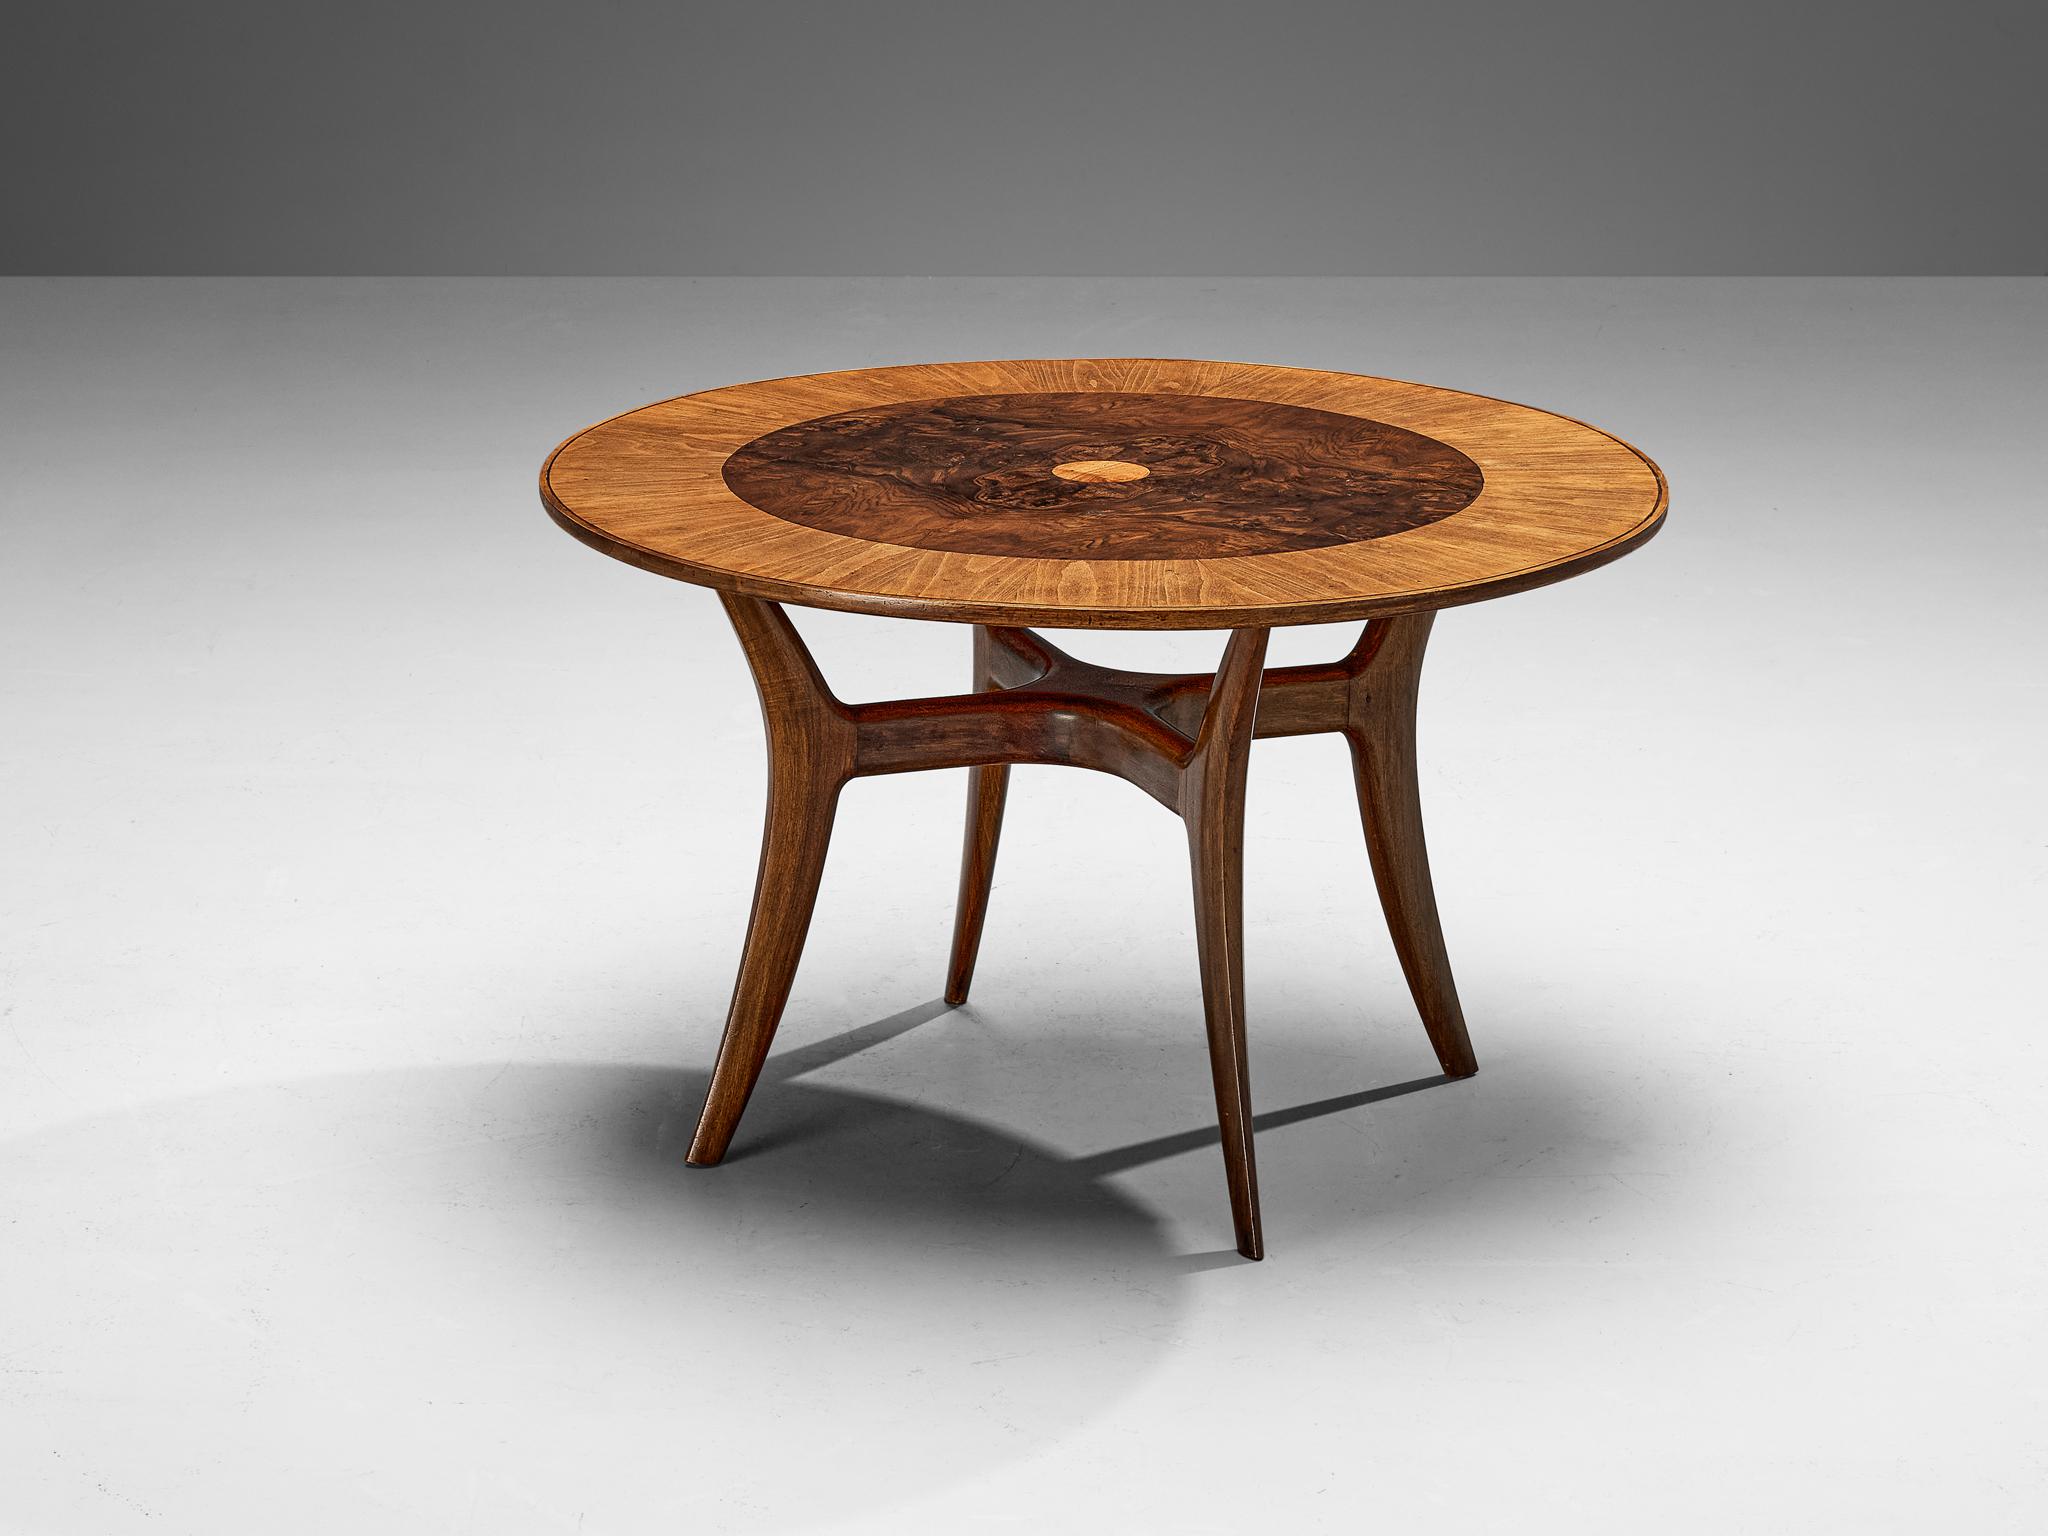 Esstisch oder Mitteltisch, Bruyère, Nussbaum, Italien, um 1955

Atemberaubend eleganter Esstisch oder Beistelltisch, hergestellt in Italien um 1955. Dieser runde Tisch zeichnet sich durch eine unglaublich reichhaltige Auswahl an MATERIALEN aus, die